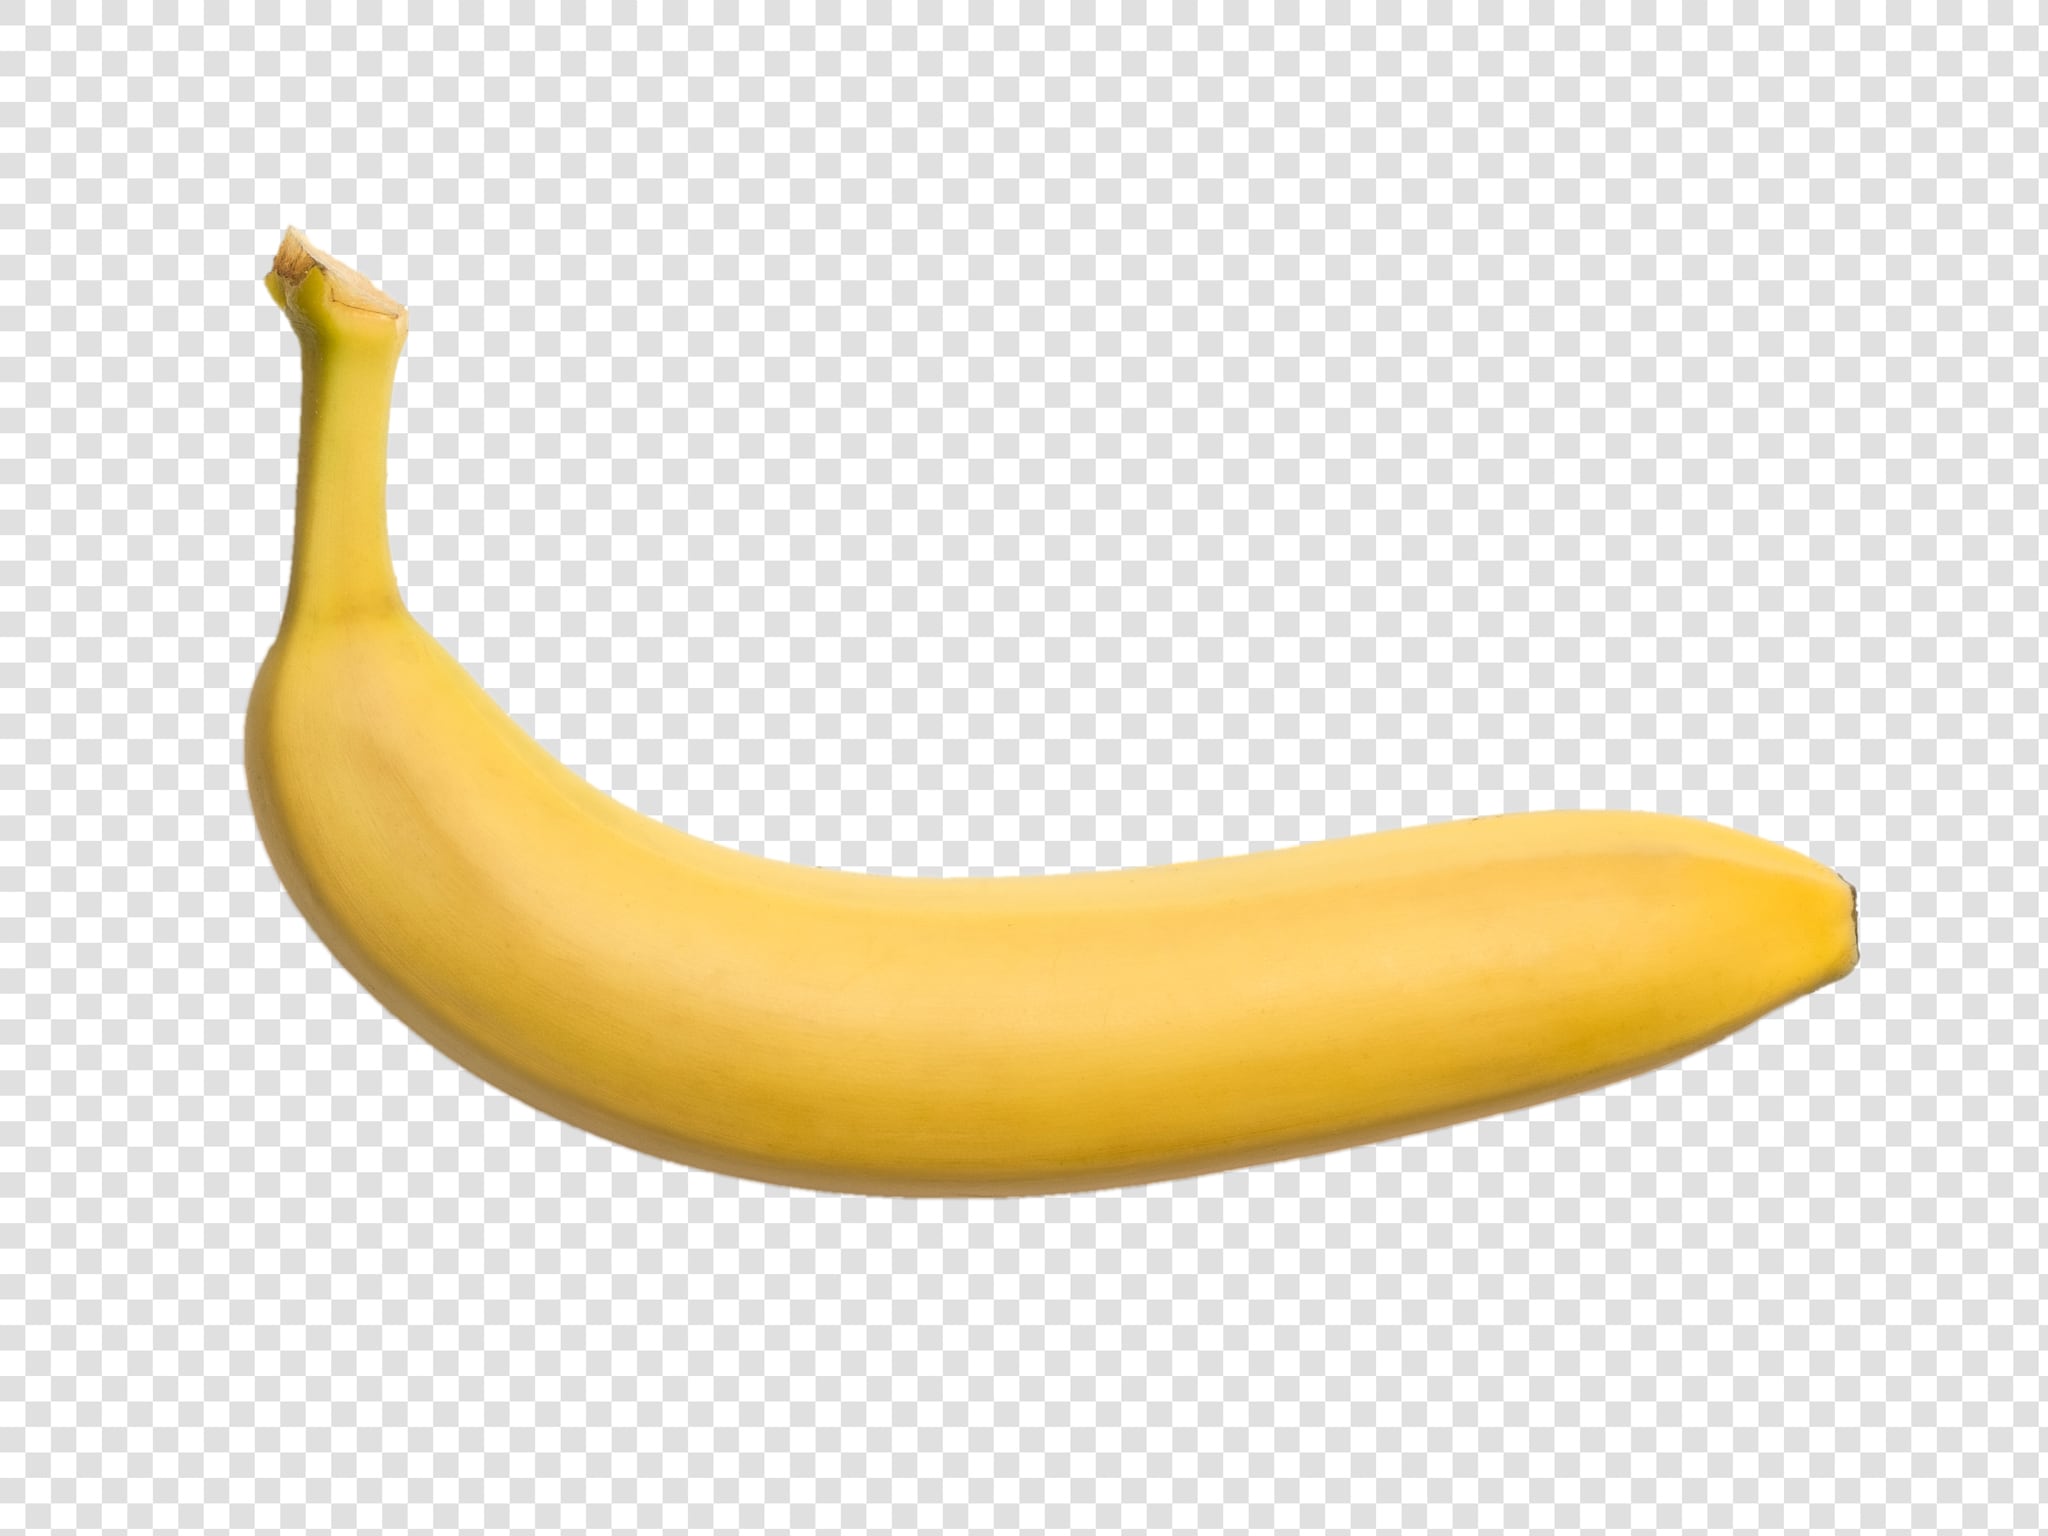 Banana PSD isolated image